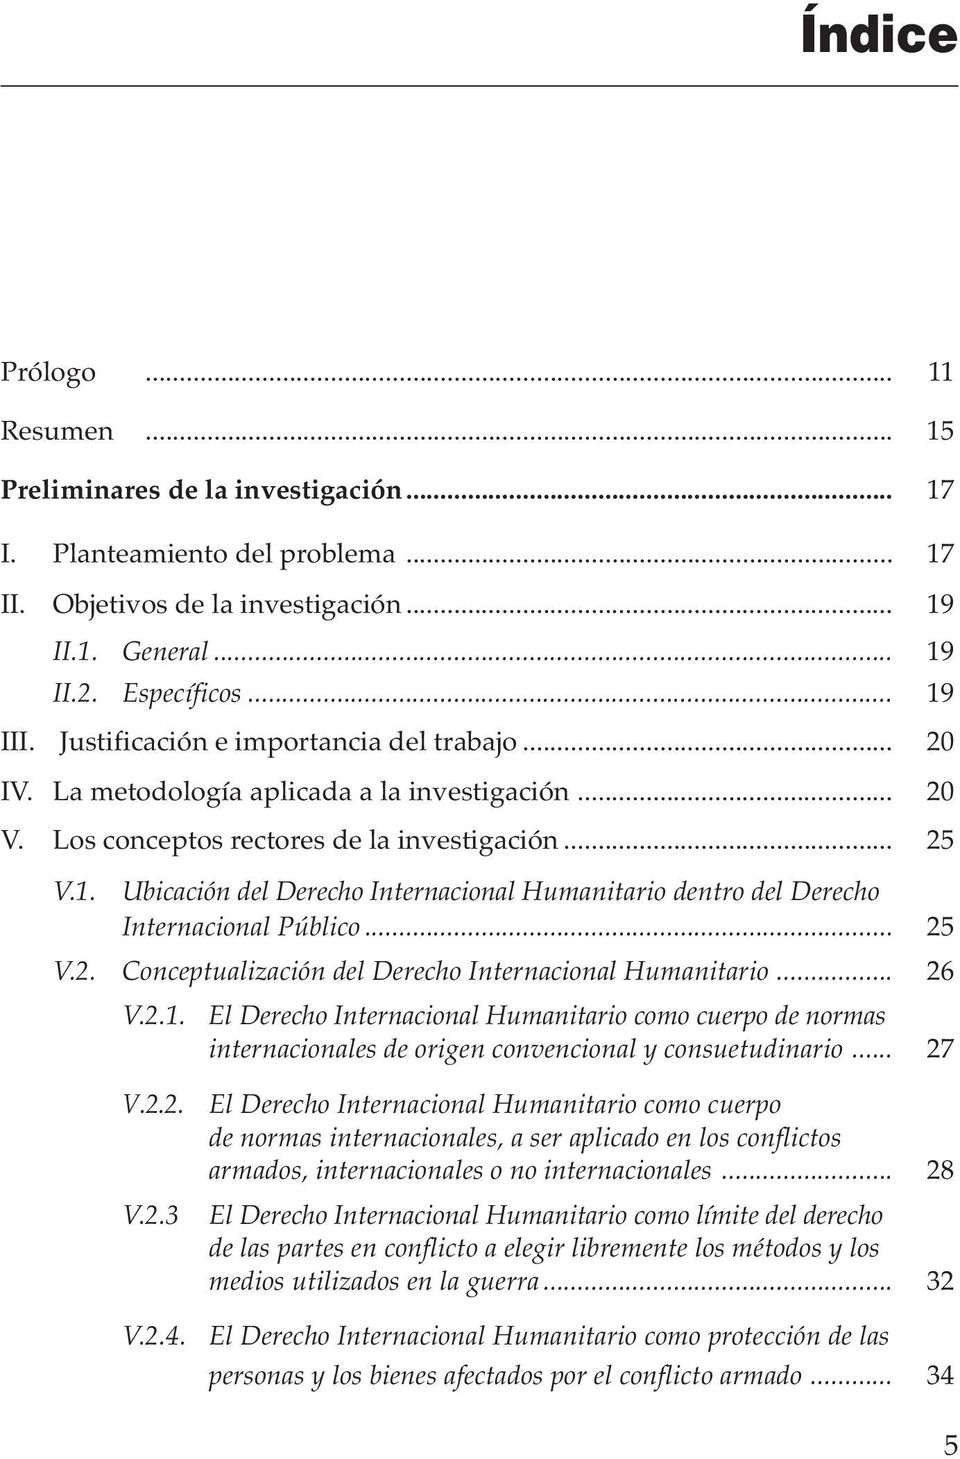 Los conceptos rectores de la investigación... 25 V.1. Ubicación del Derecho Internacional Humanitario dentro del Derecho Internacional Público... 25 V.2. Conceptualización del Derecho Internacional Humanitario.